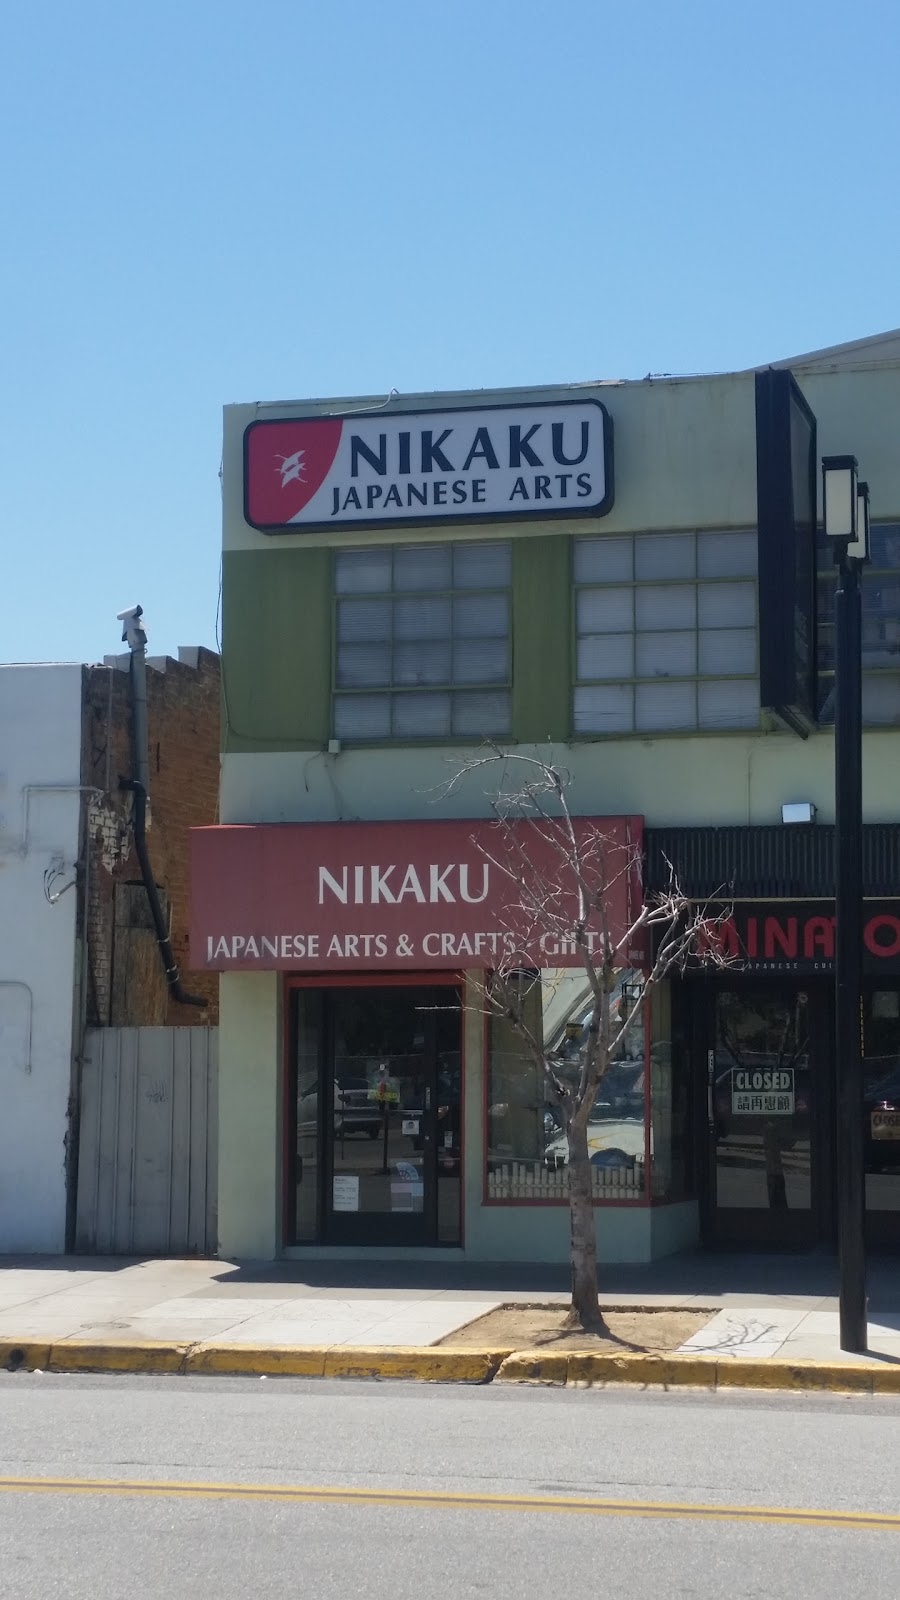 Nikaku Japanese Arts | 615 N 6th St, San Jose, CA 95112 | Phone: (408) 971-2822